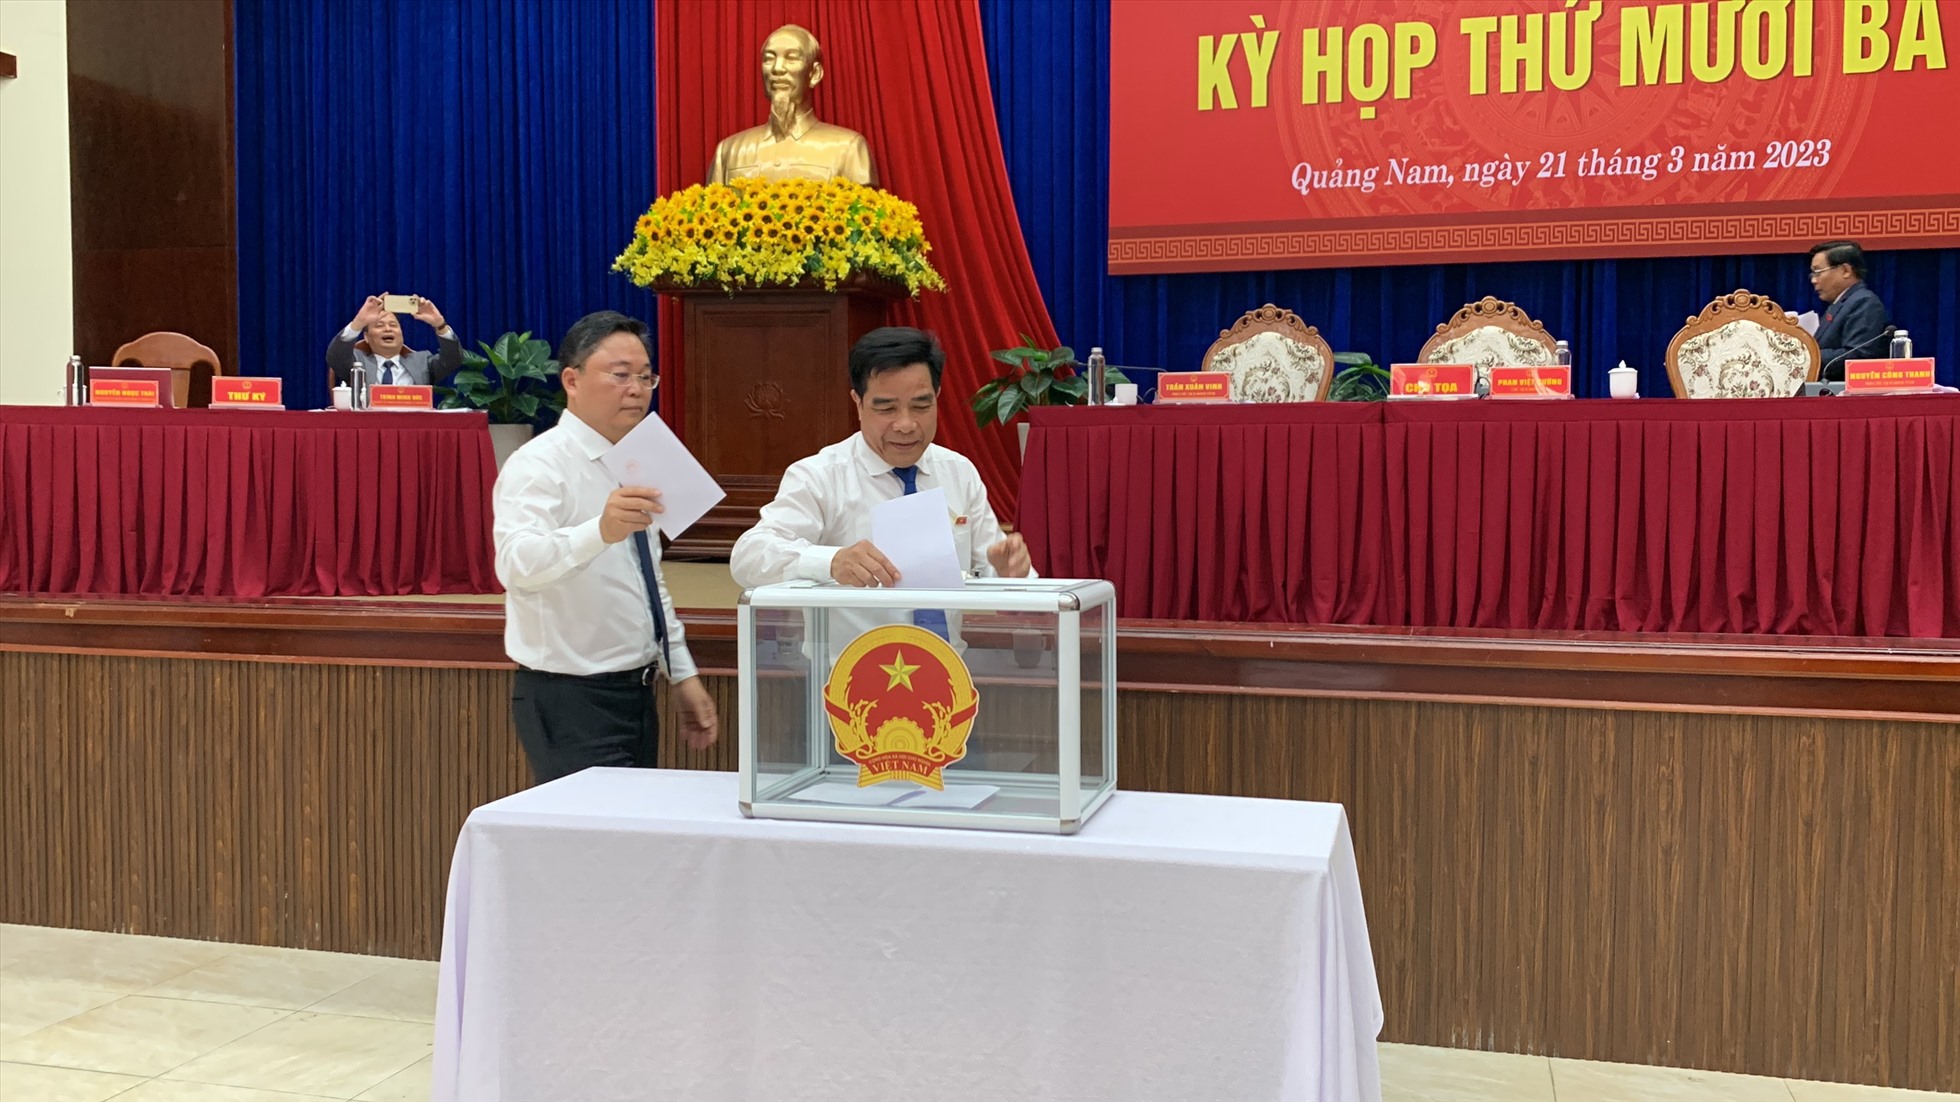 Đại biểu HĐND tỉnh Quảng Nam bỏ phiếu kín cho thôi đại biểu với ông Nguyễn Viết Dũng. Ảnh Hoàng Bin